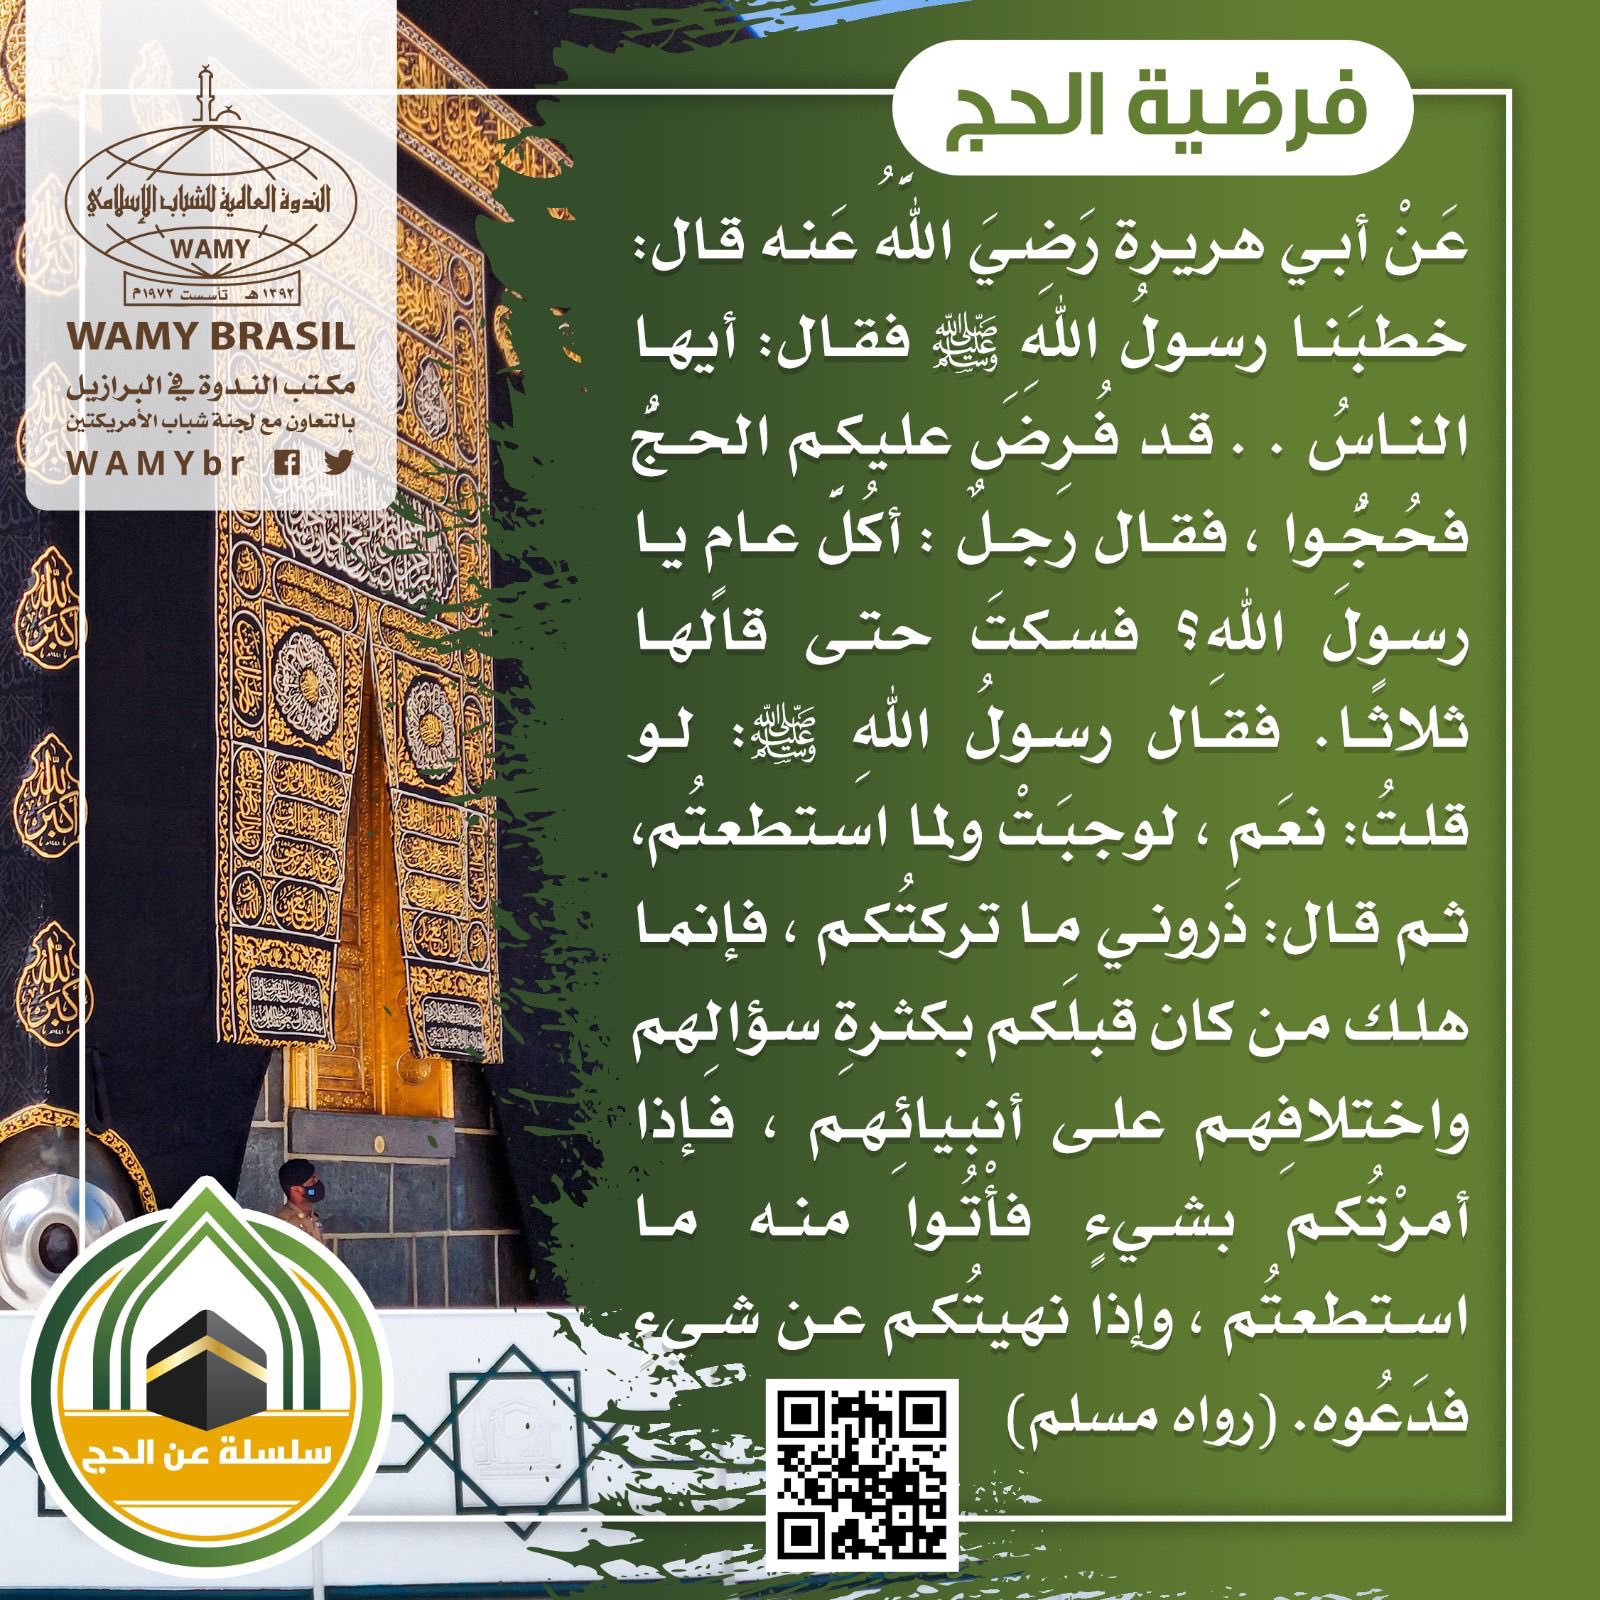 “Al hajj”, um dos pilares do Islam